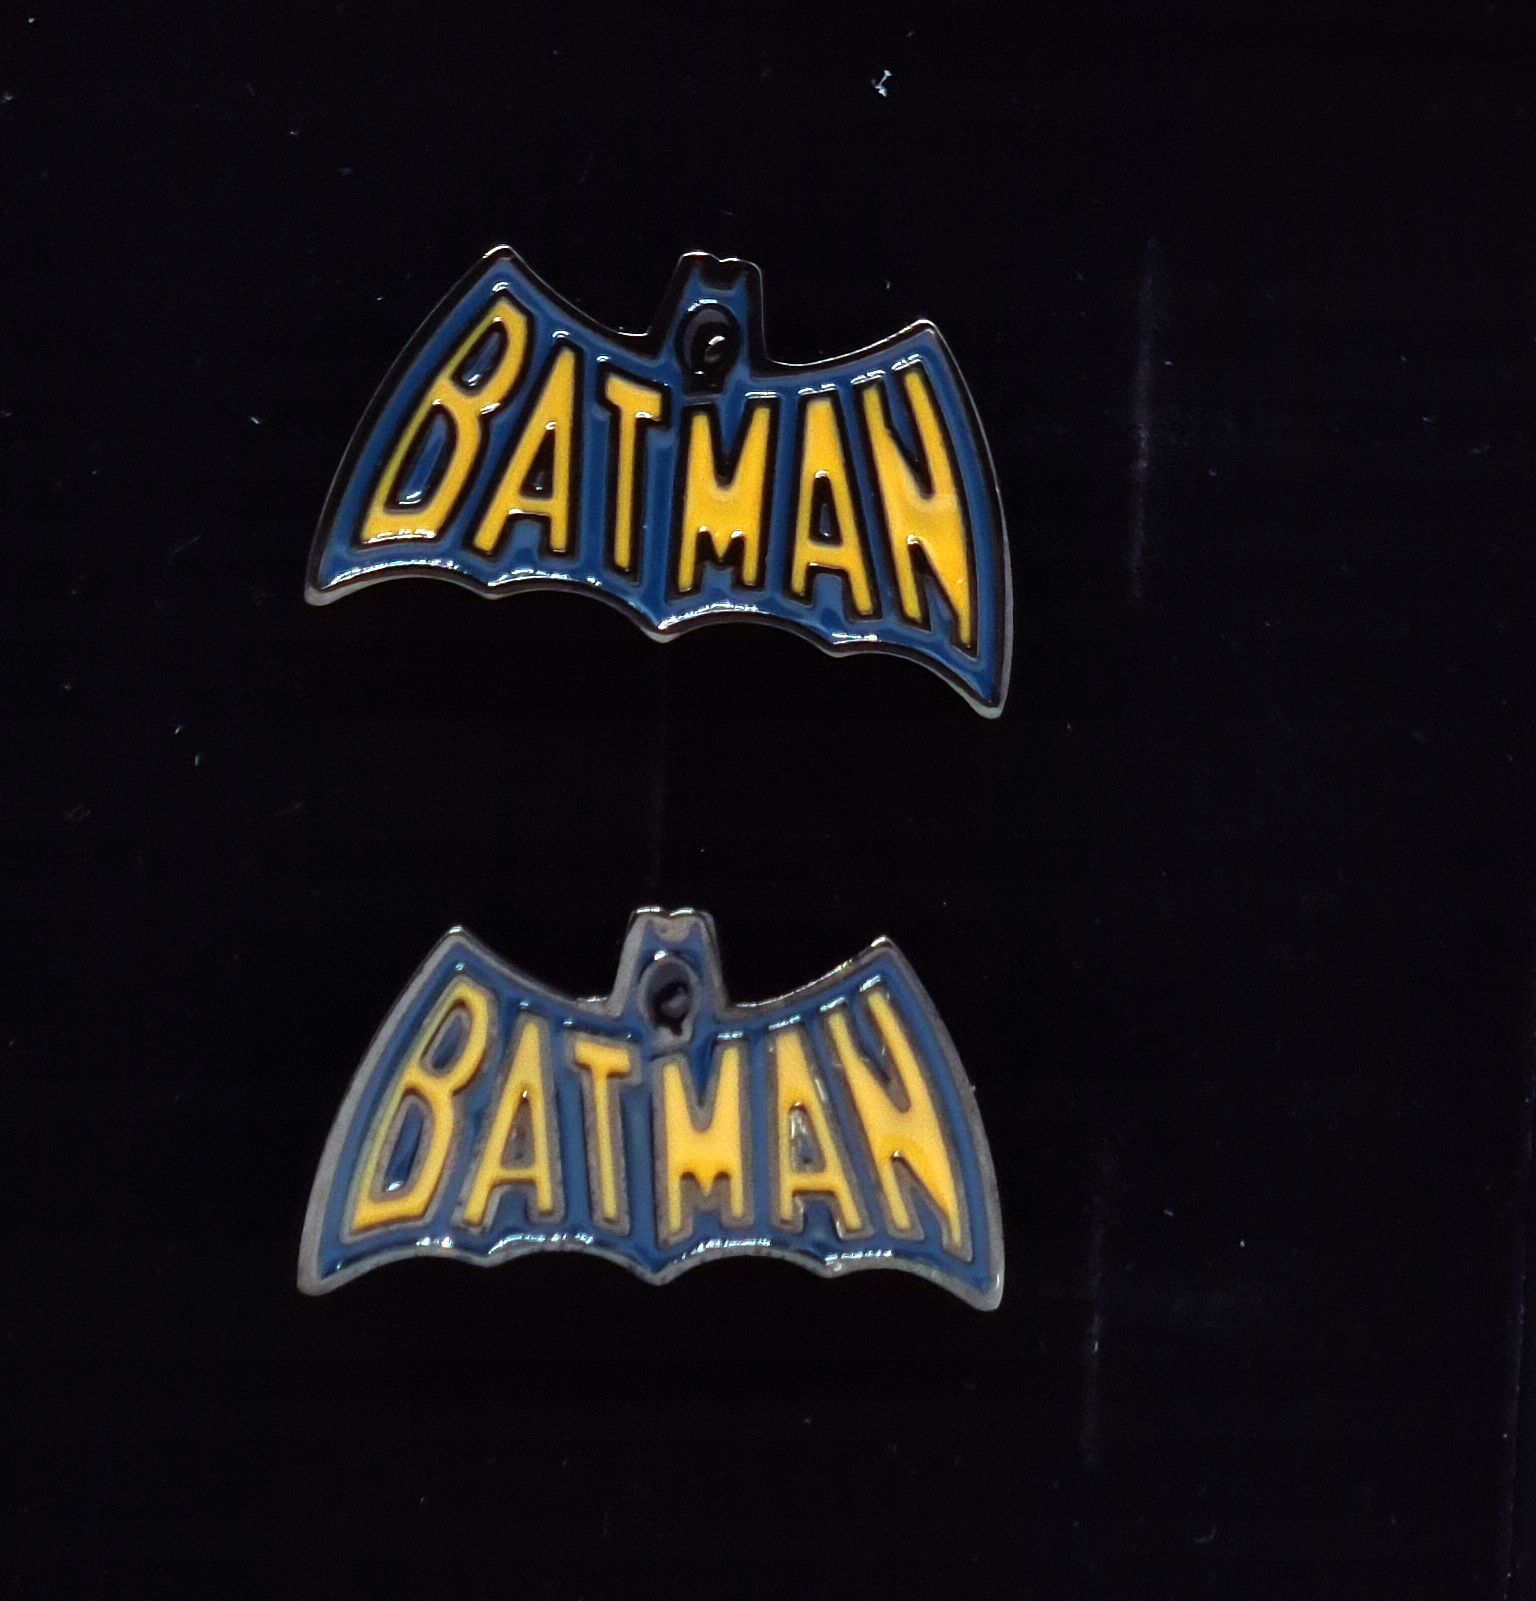 Spinki do mankietów wzór Batman